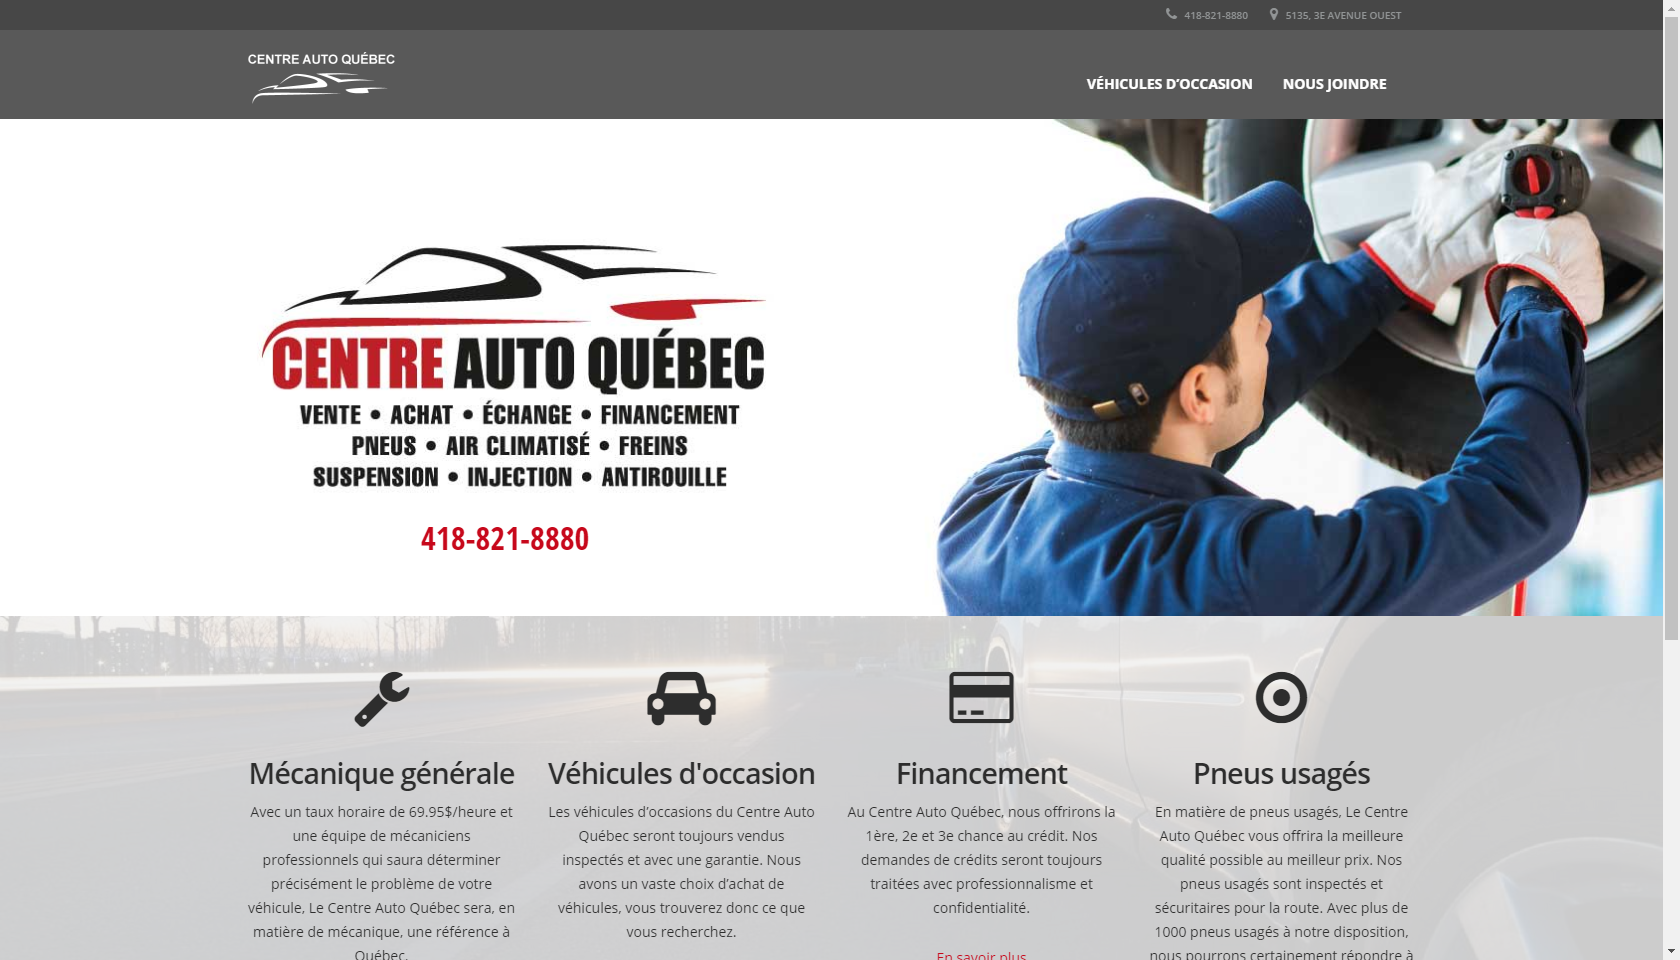 Le Centre Auto Québec